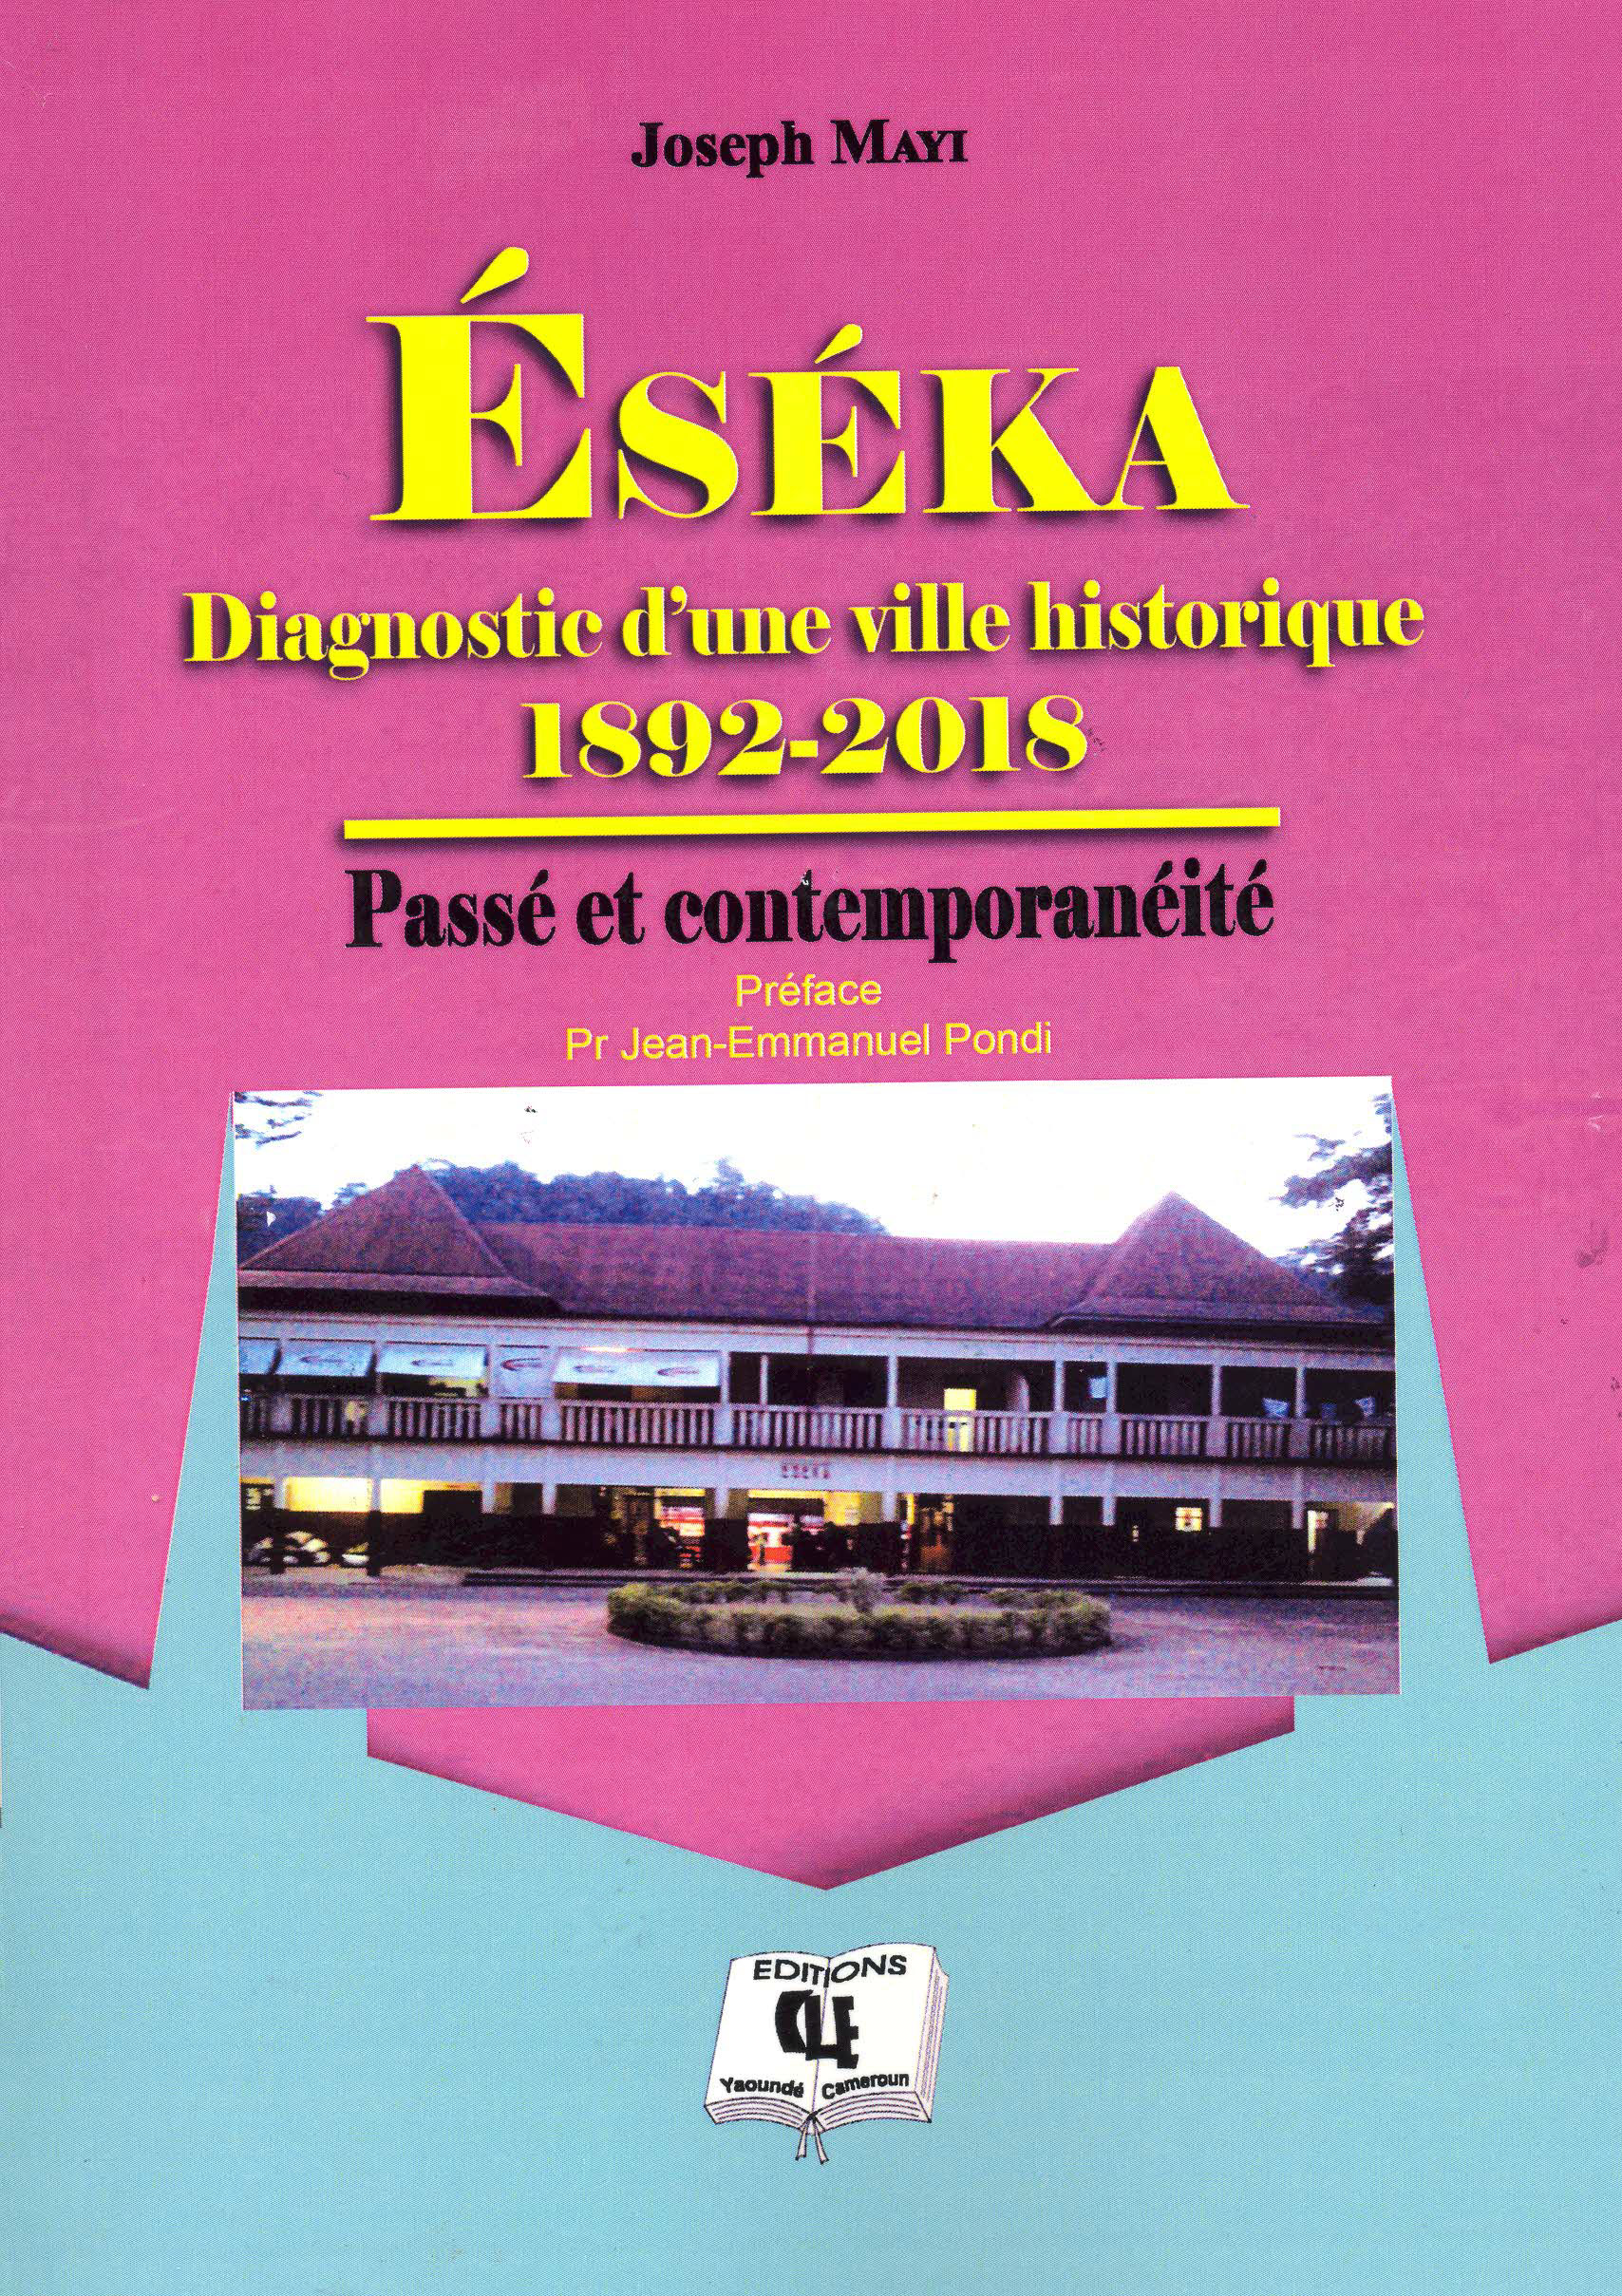 Eseka diagnostic d'une ville historique 1892 - 2018